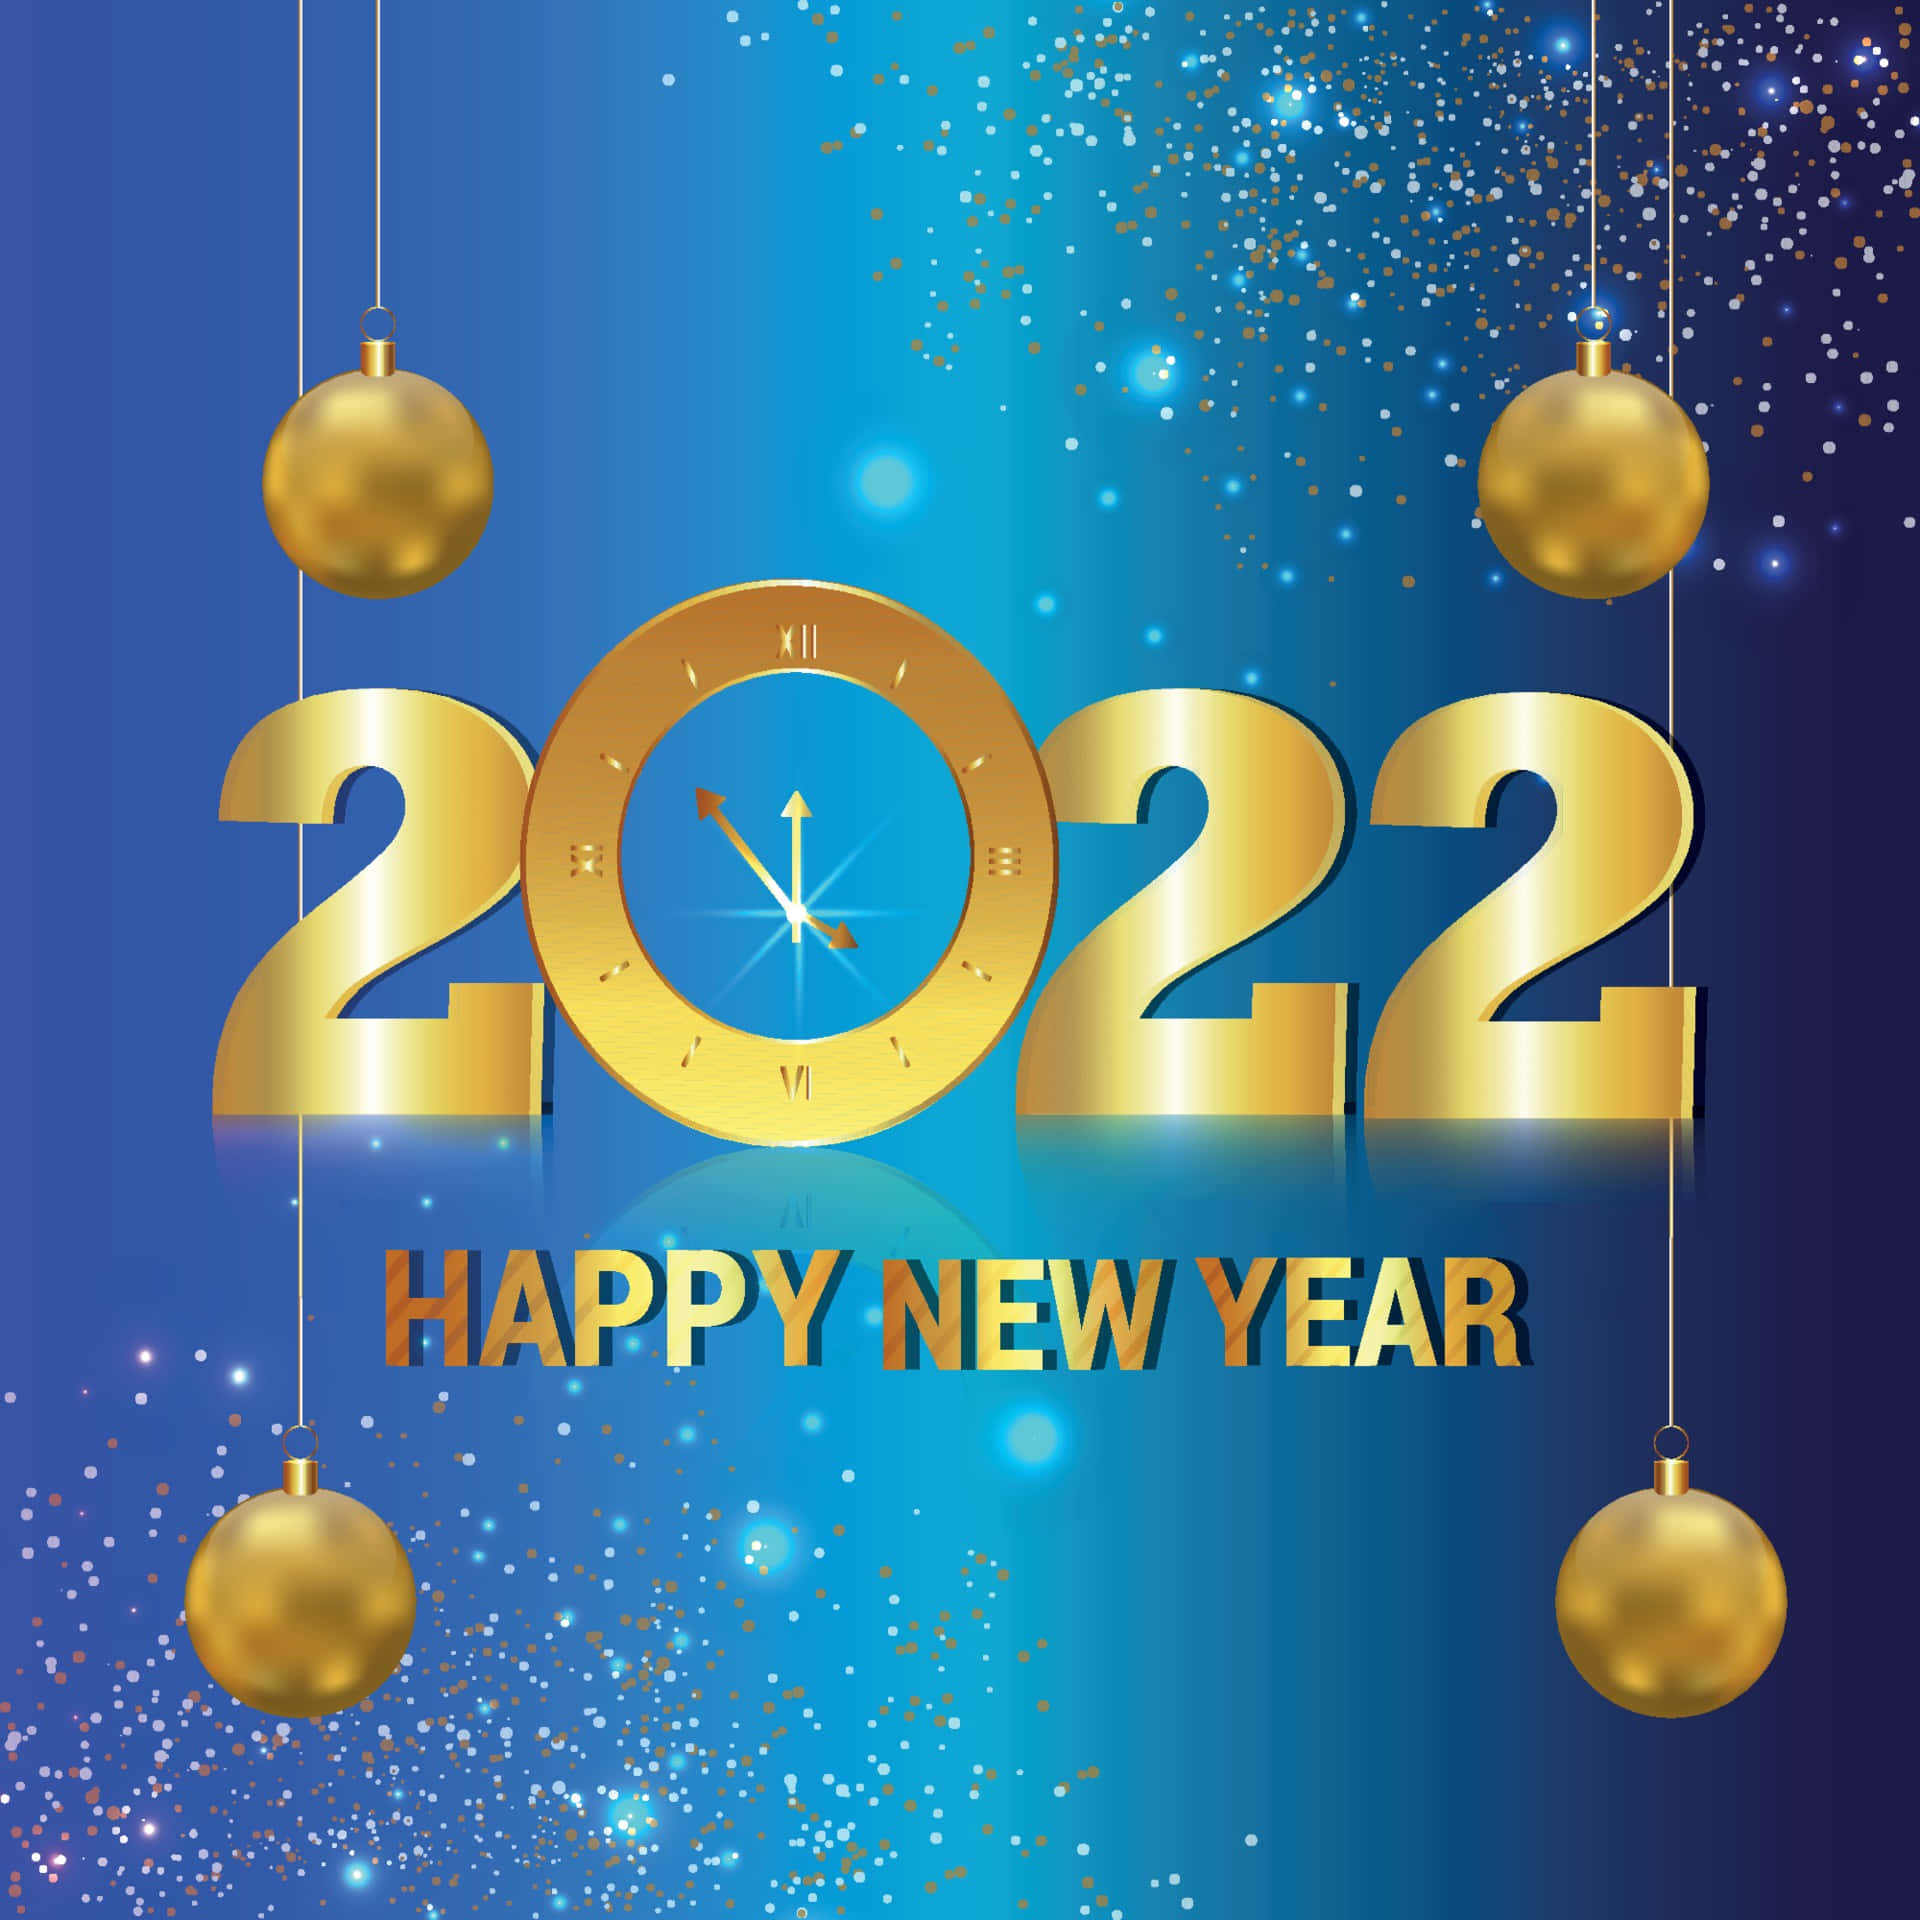 Augurandotiun Felice Anno Nuovo 2022!